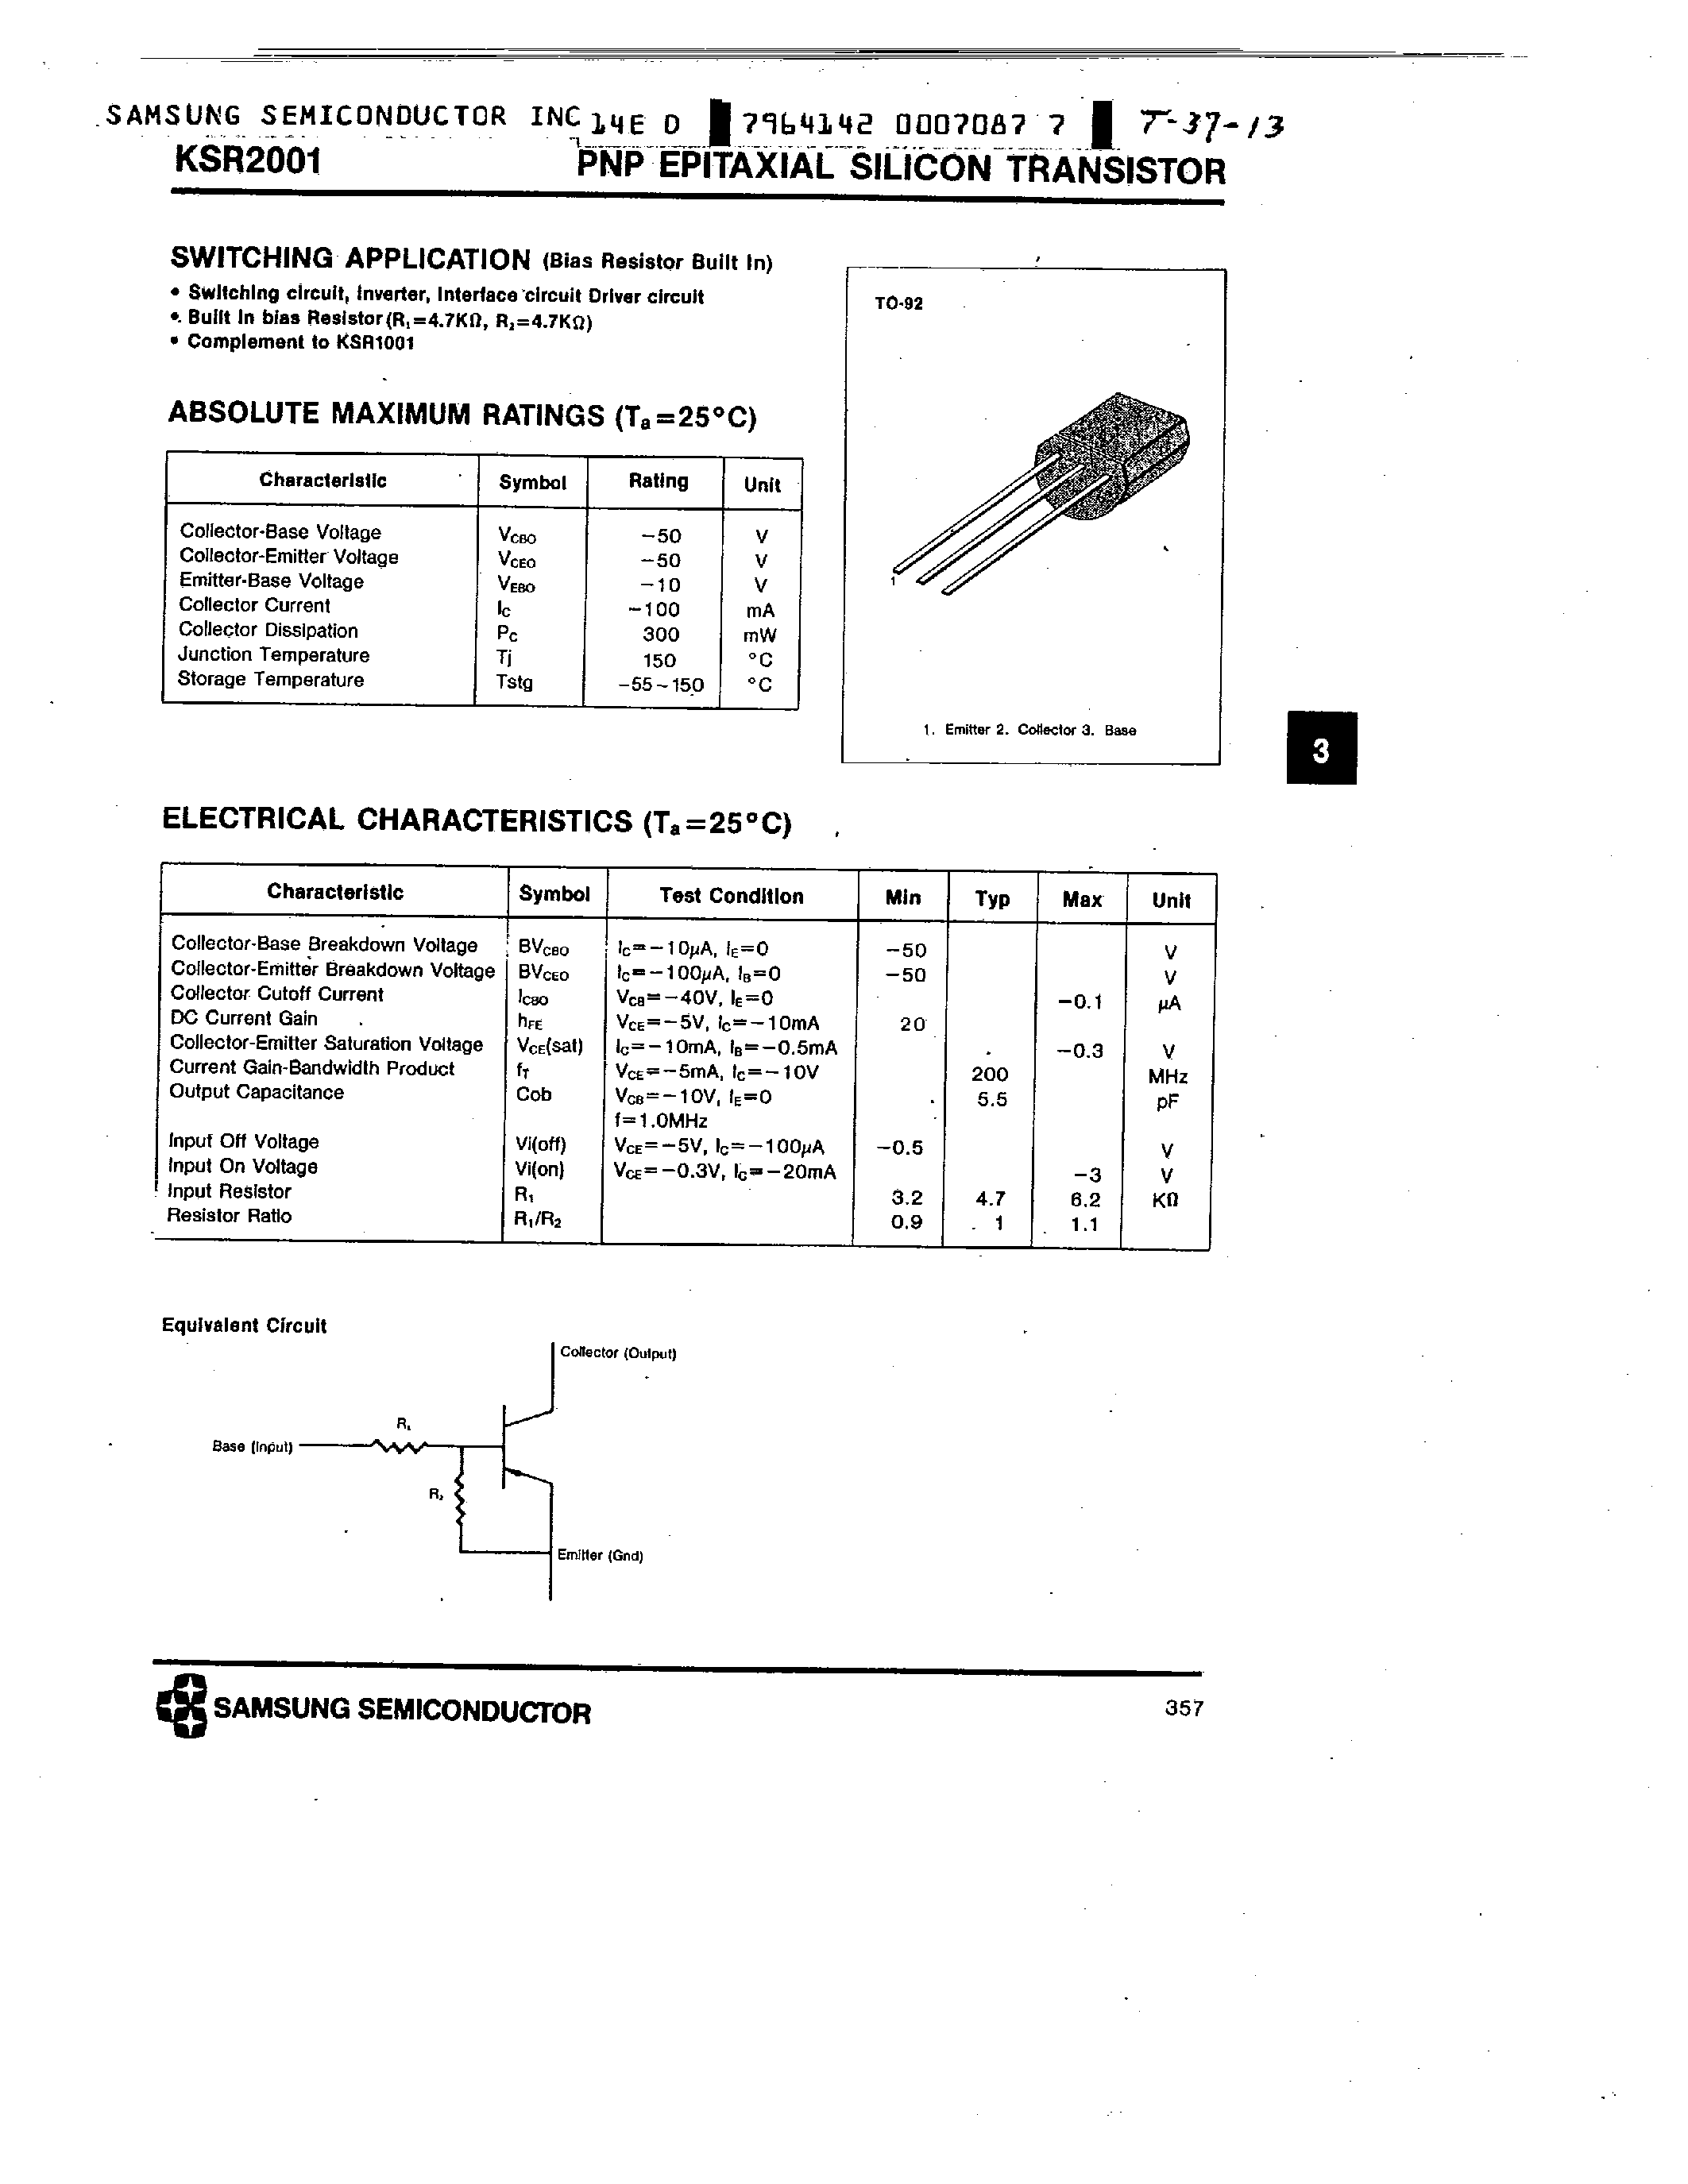 Datasheet KSR2001 - PNP (SWITCHING APPLICATION) page 1